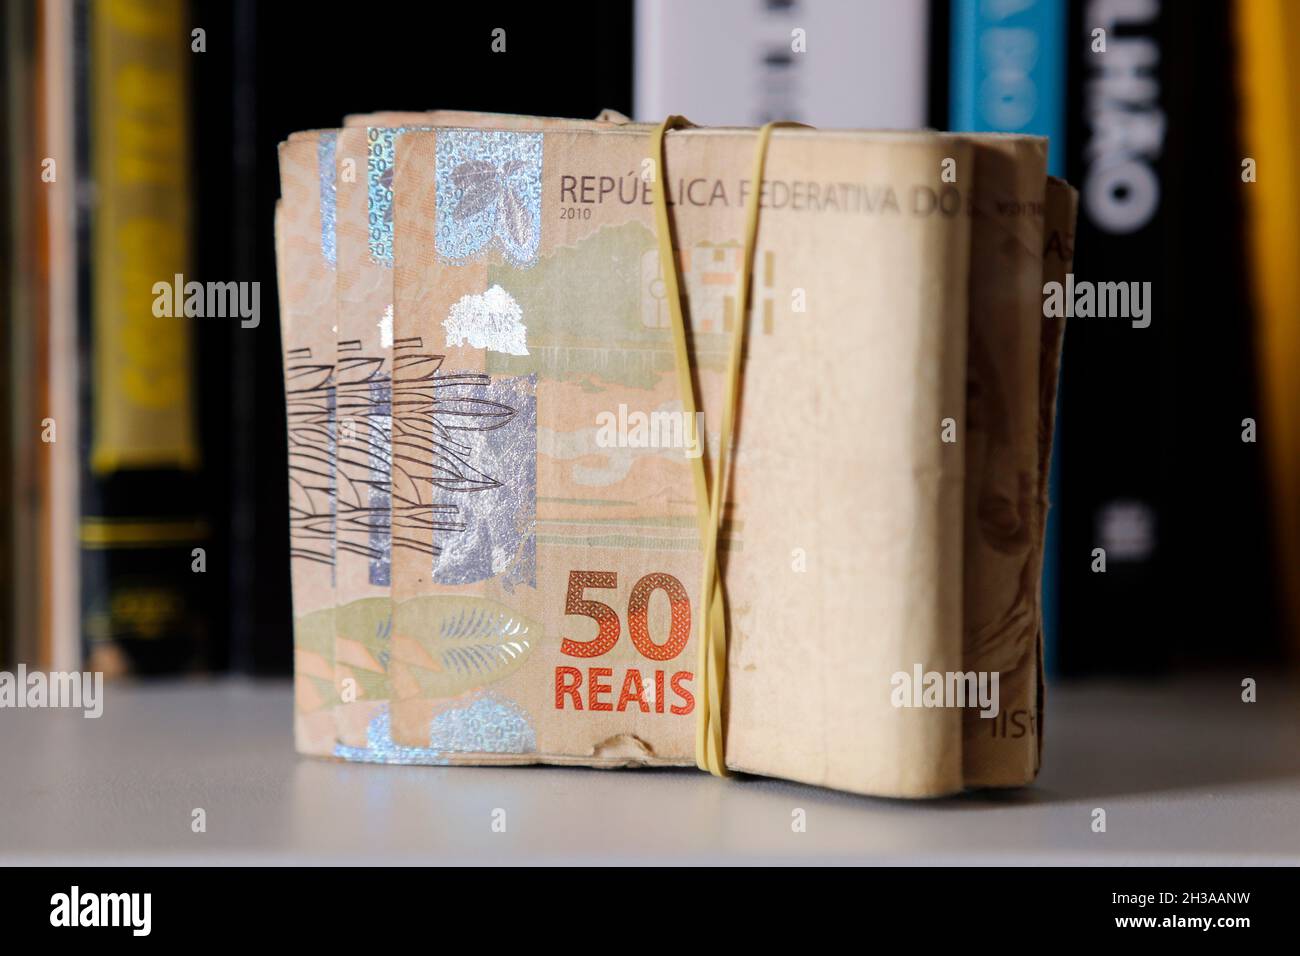 Brésil argent empilé et groupé - plusieurs billets réels brésiliens dans le groupe de caoutchouc Banque D'Images